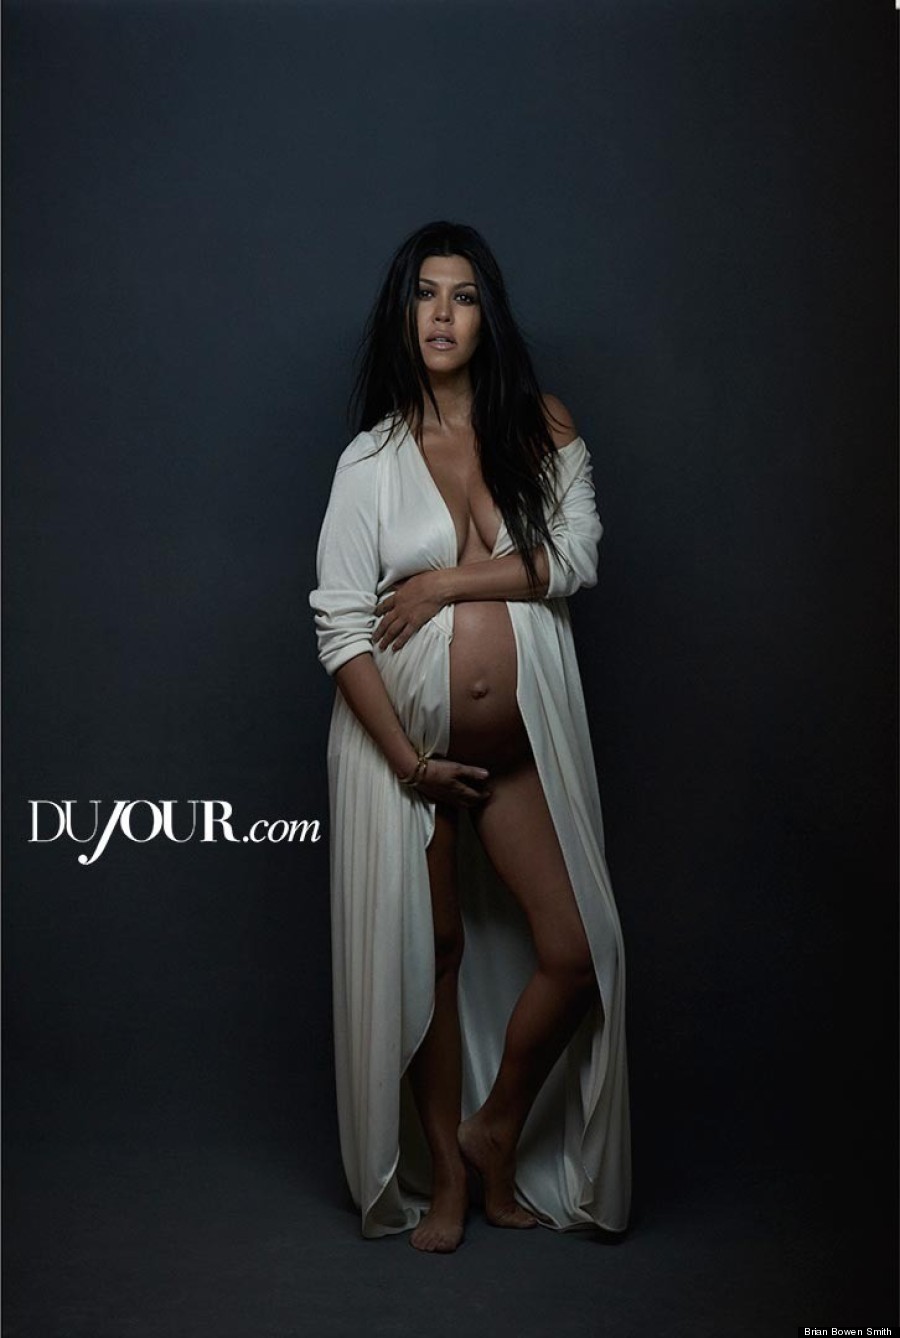 Pregnant Posing Nude - Pregnant Kourtney Kardashian Poses Nude For DuJour Magazine ...